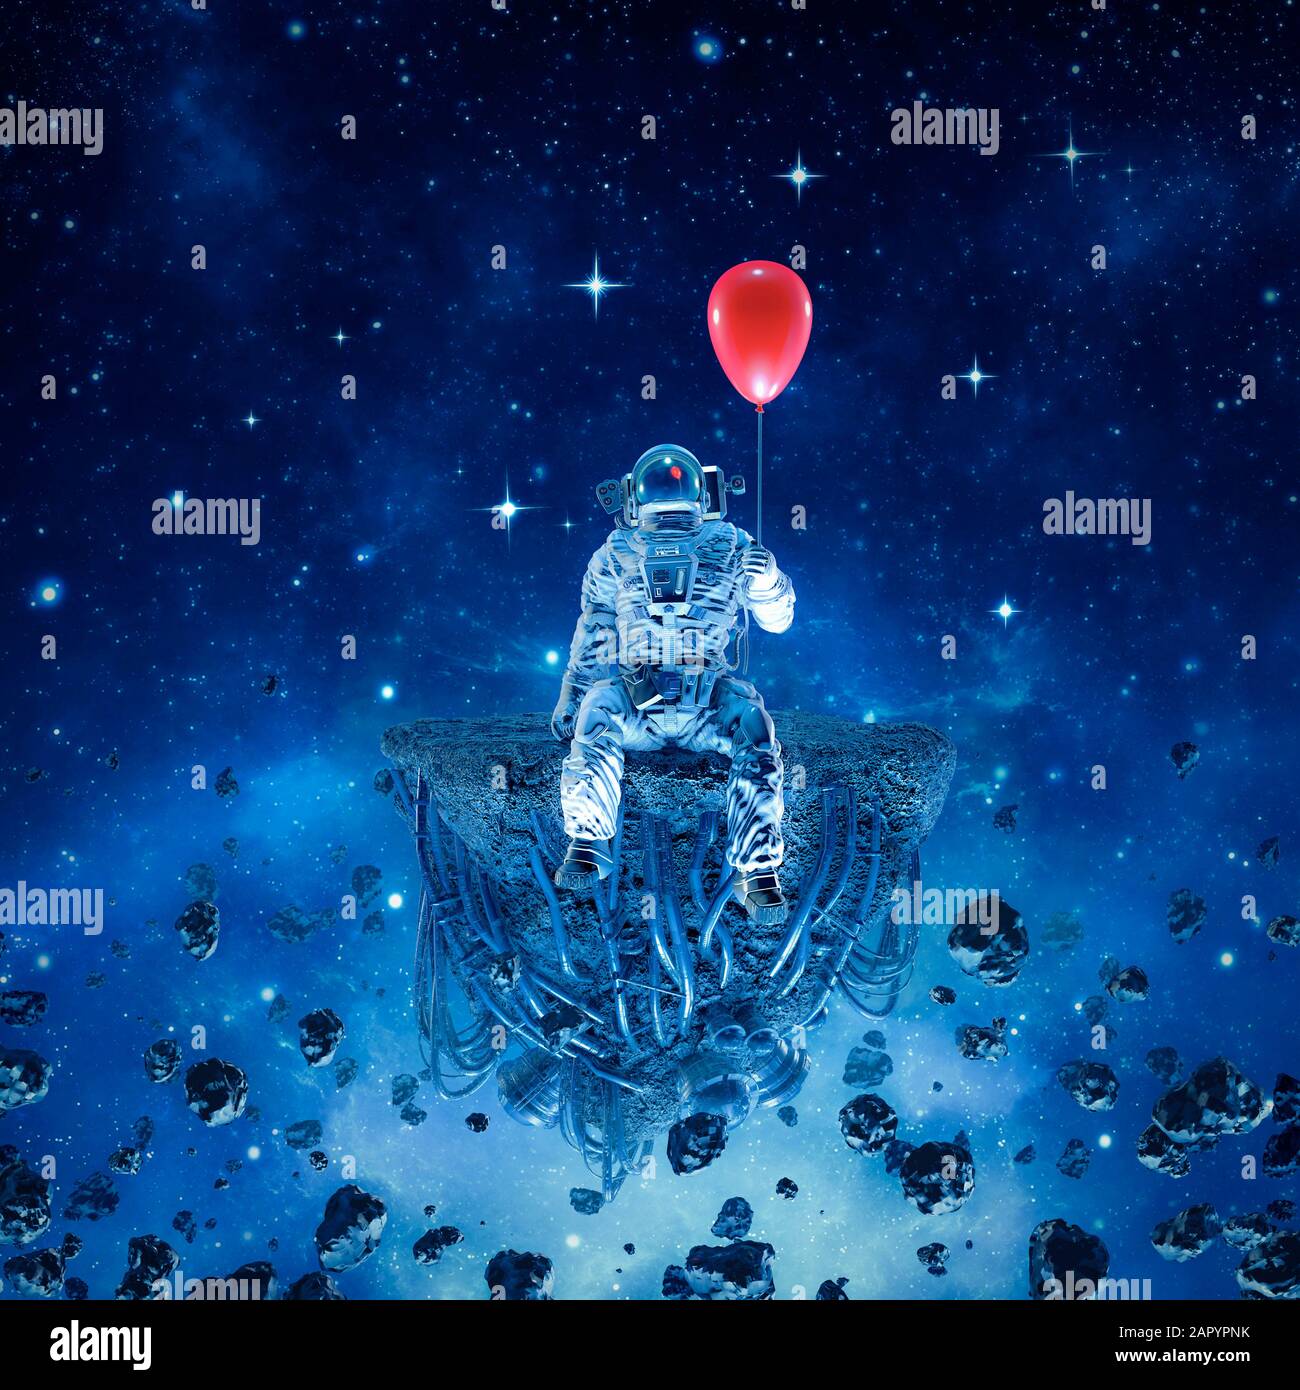 Partie d'une / 3-  illustration de la scène de science-fiction surréaliste avec l'astronaute assis sur l'astéroïde artificiel tenant ballon rouge dans l'espace Banque D'Images